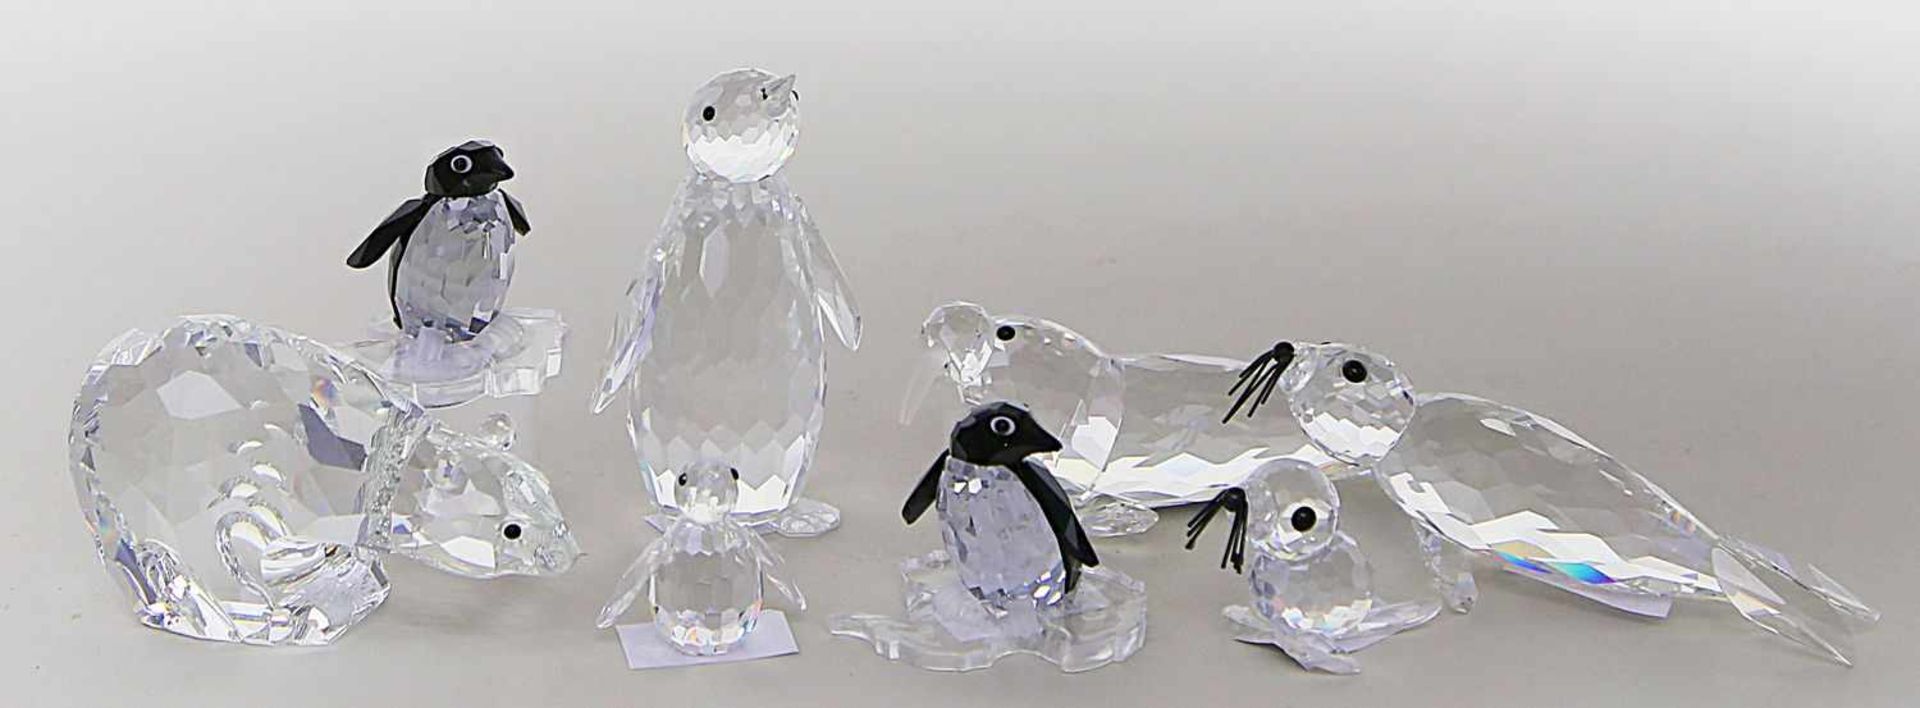 Acht Skulpturen, Swarovski:Eisbär, Walross, Seehund, Heuler und vier div. Pinguine (2x auf "